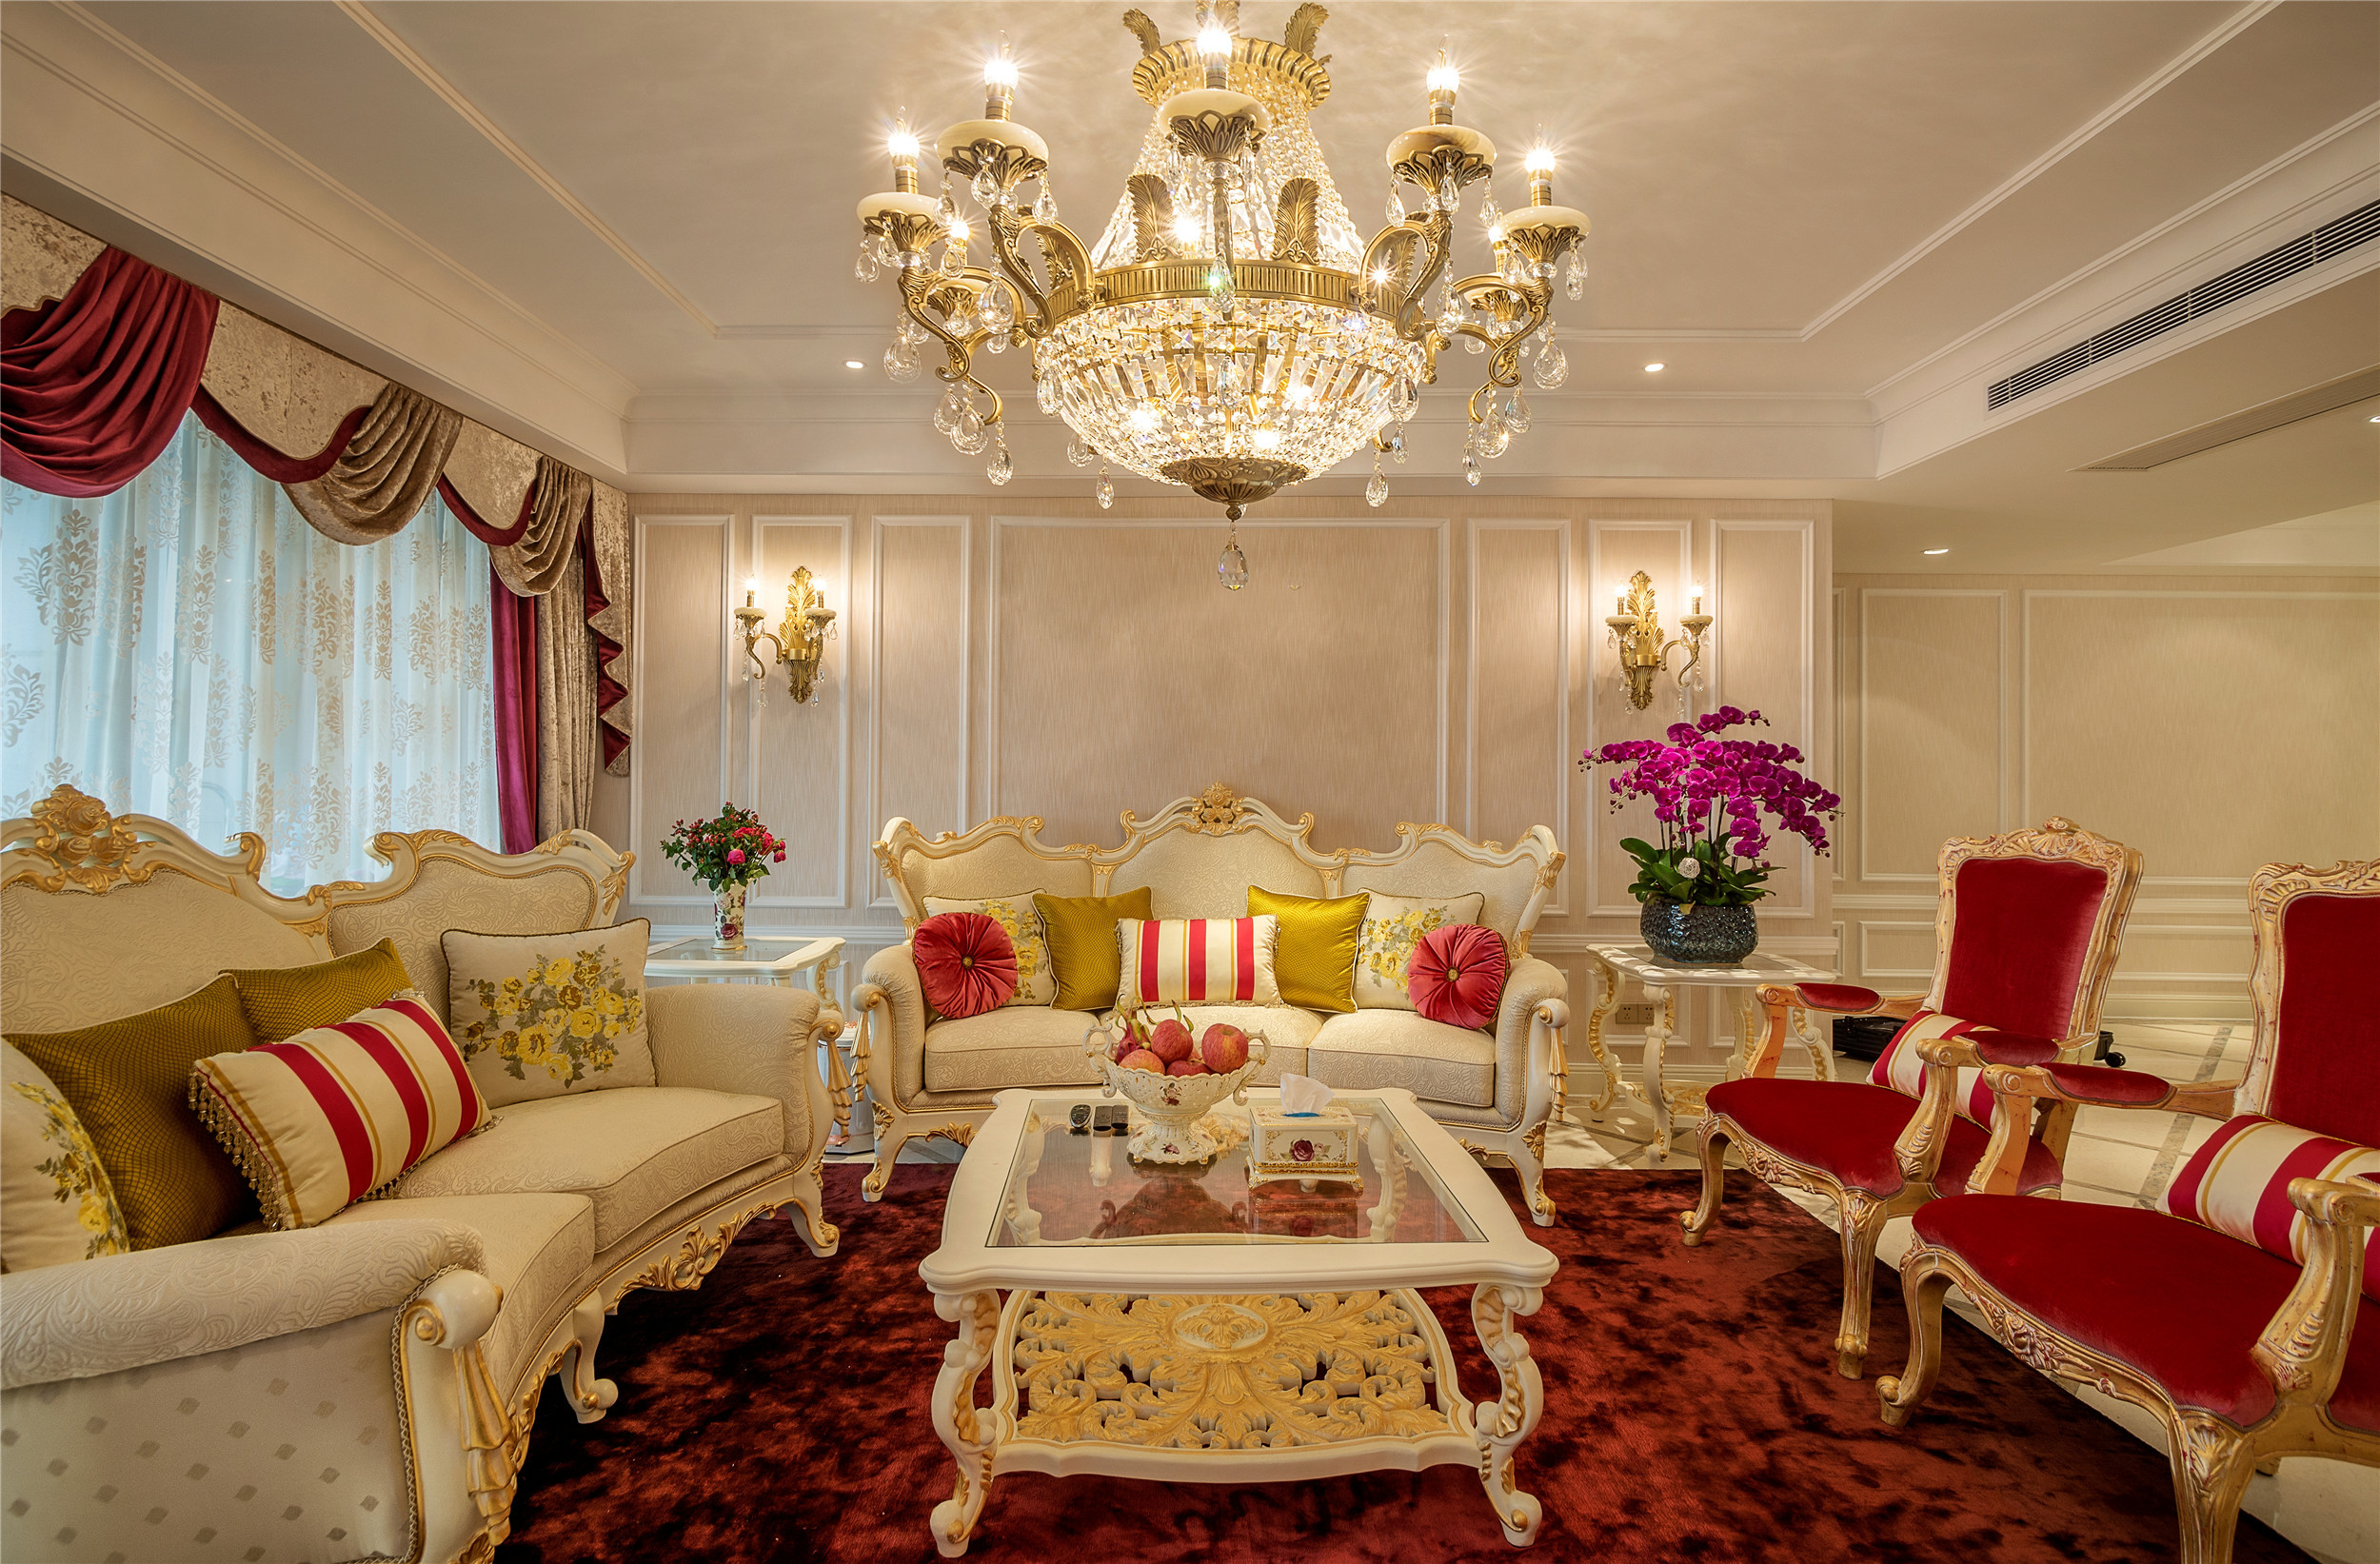 大户型,豪华型装修,140平米以上装修,公寓装修,客厅,法式风格,沙发,灯具,红色,金色